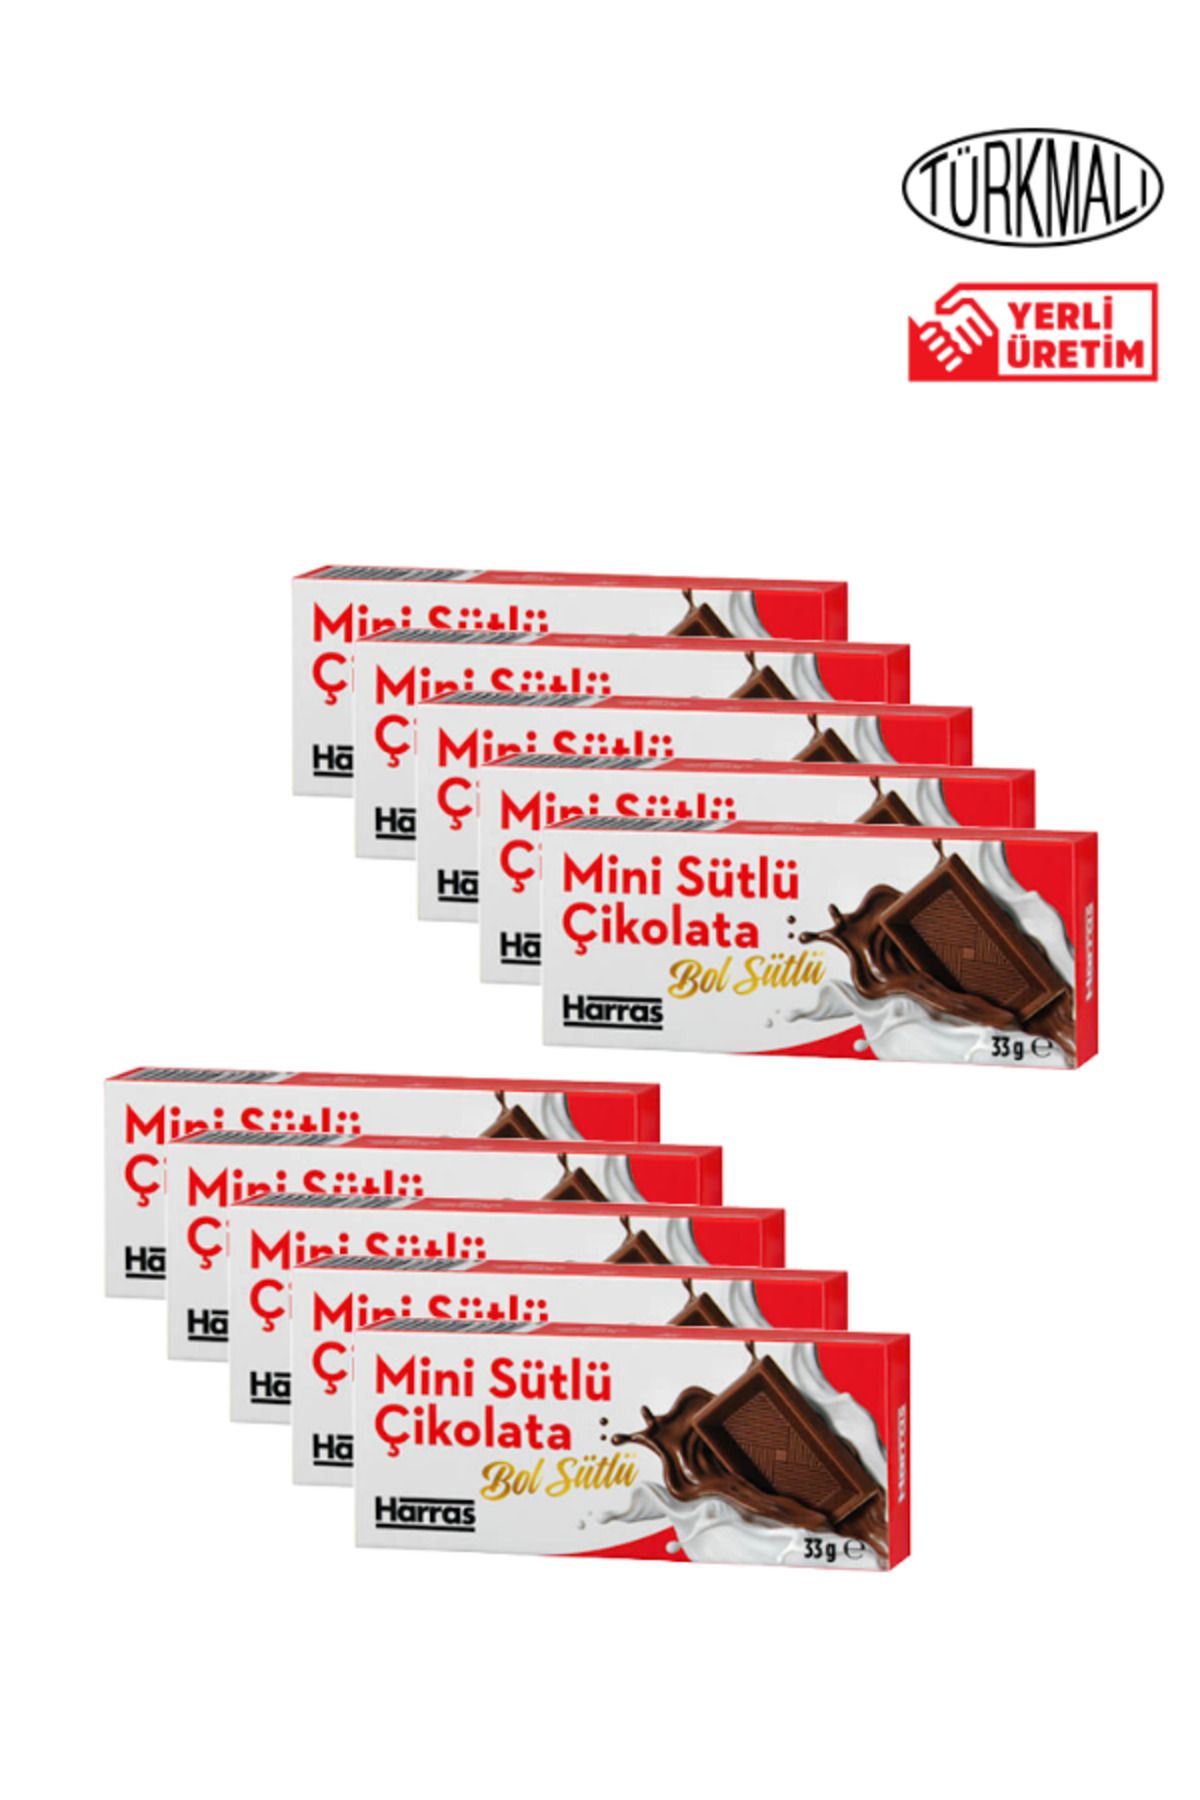 Harras Mini Sütlü Çikolata 33gr x 10 Paket